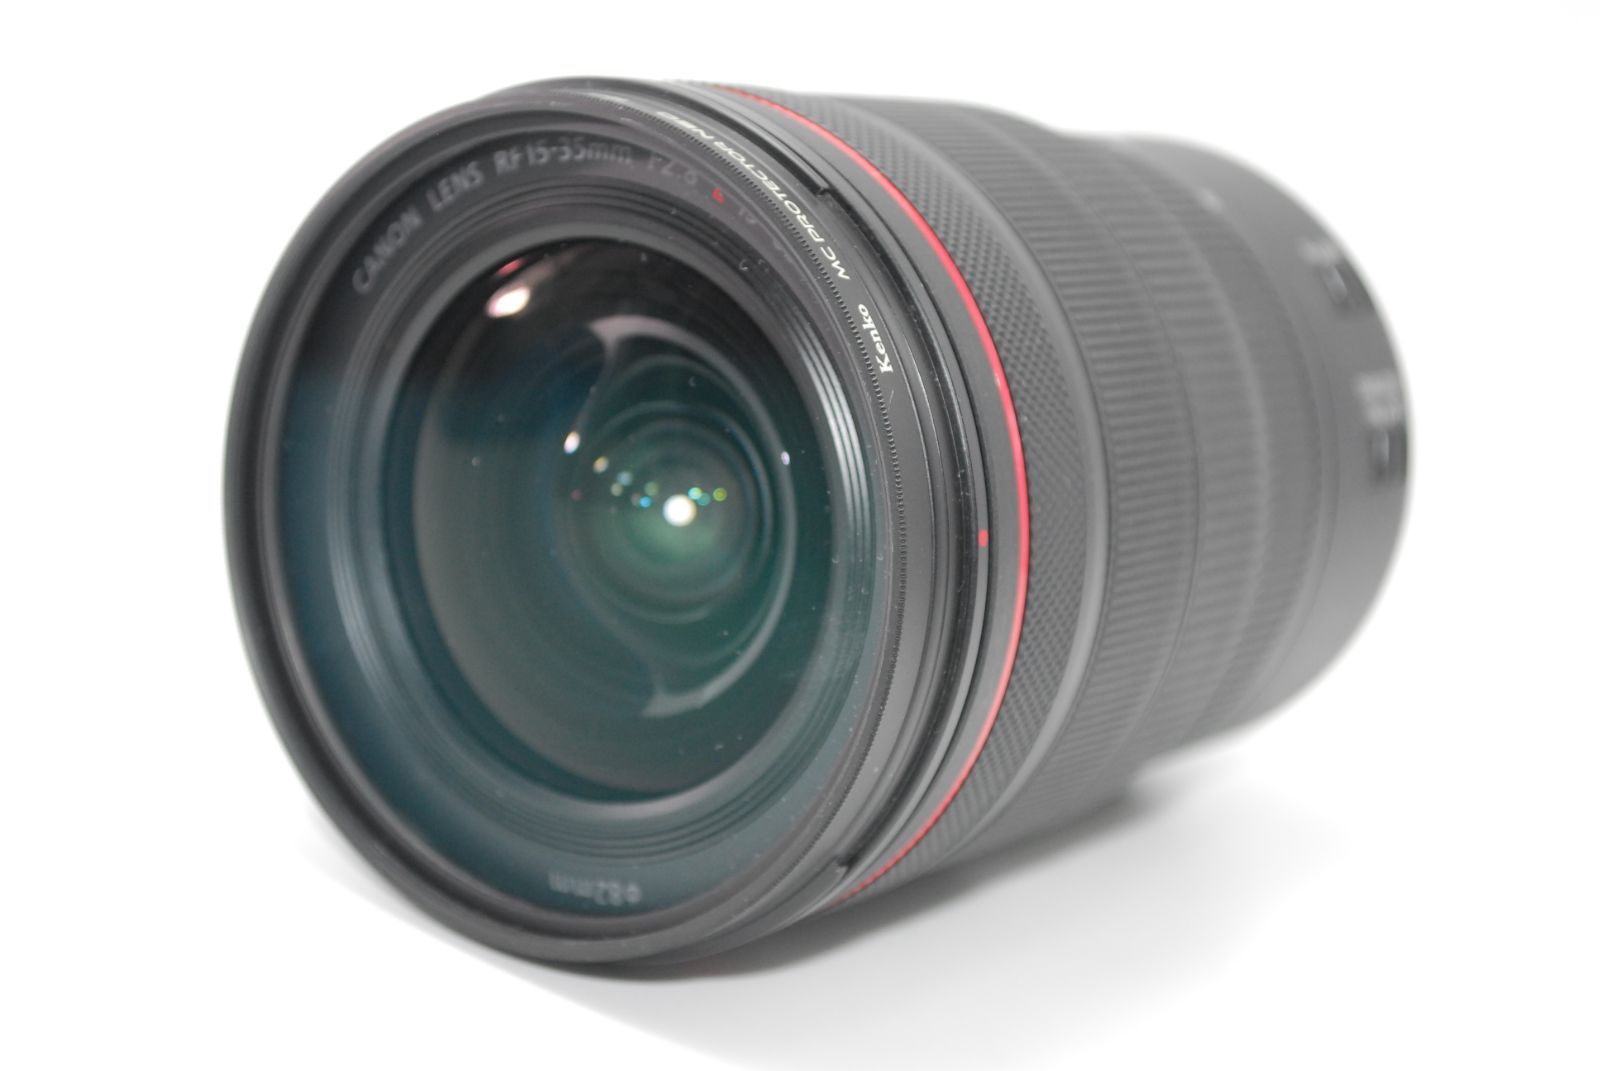 Canon RF15-35mm F2.8 L IS USM ほぼ新品カメラ